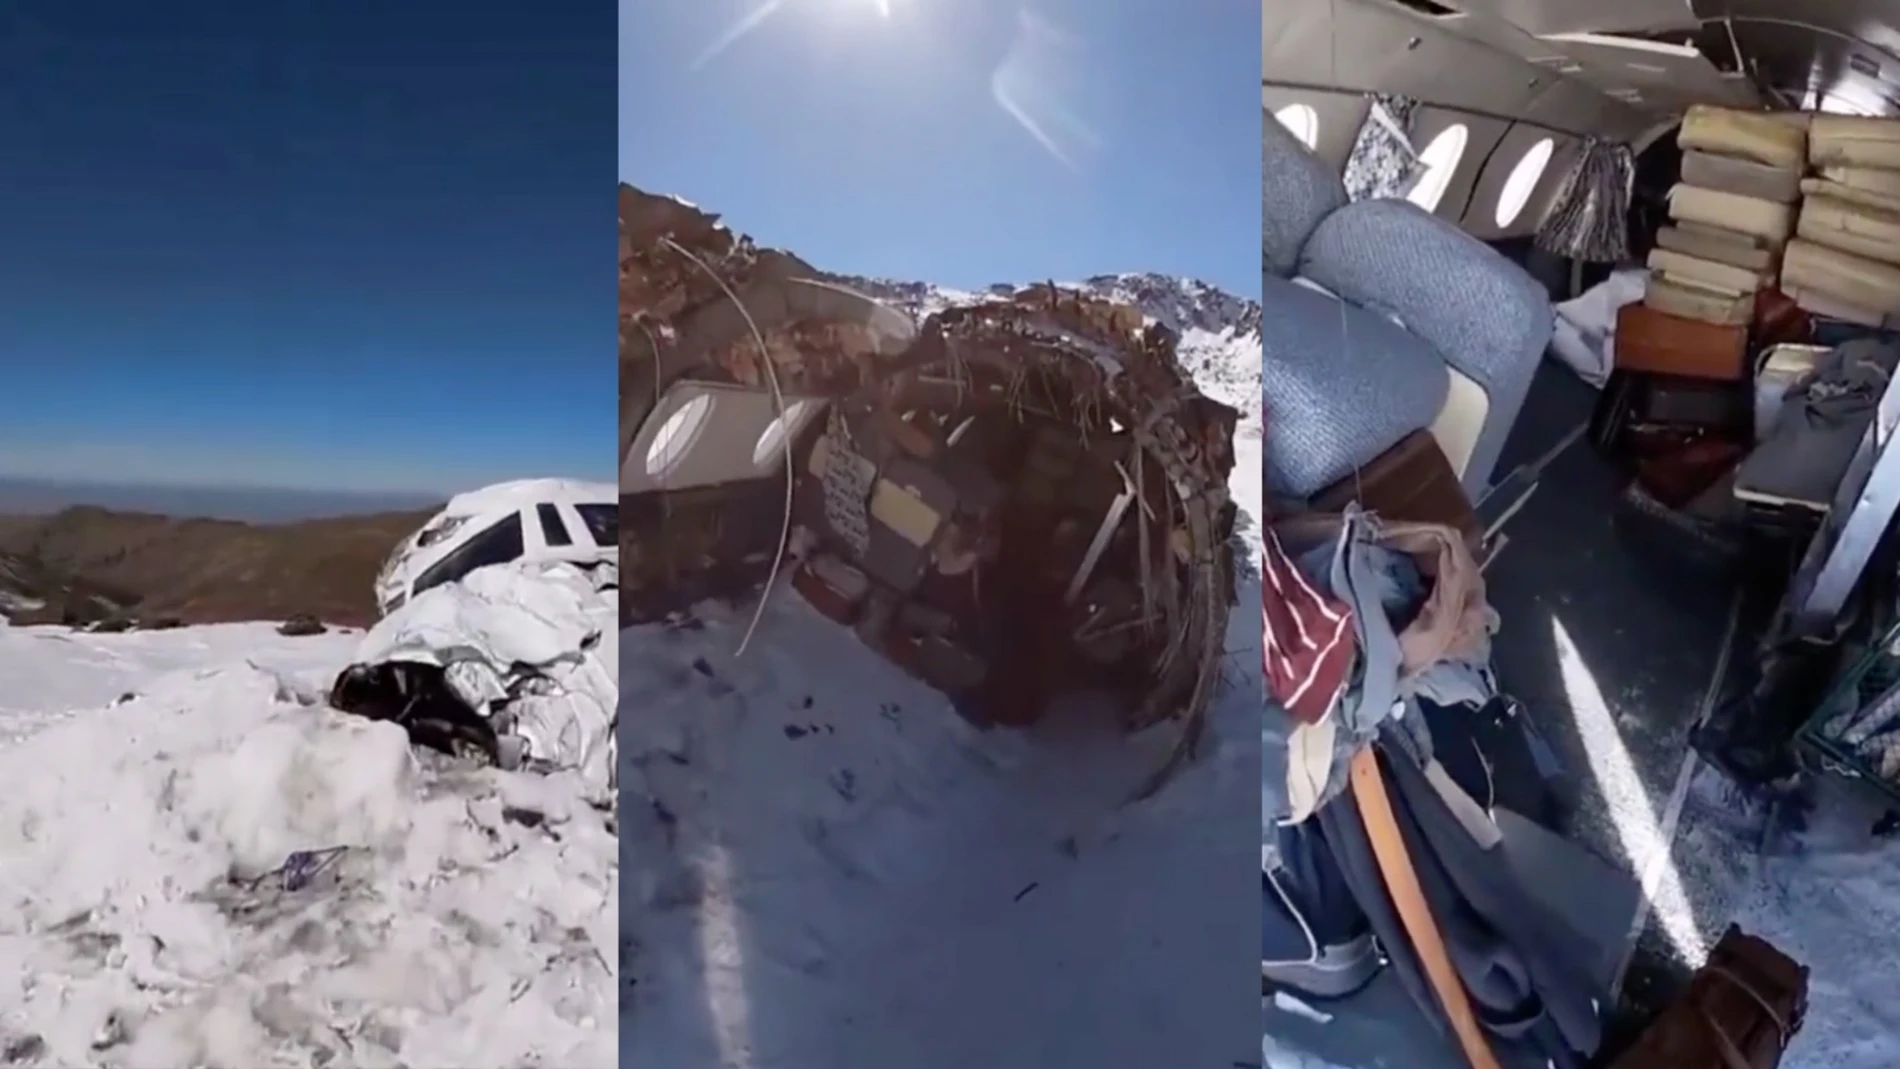 El avión de La sociedad de la nieve ya no está en Sierra Nevada